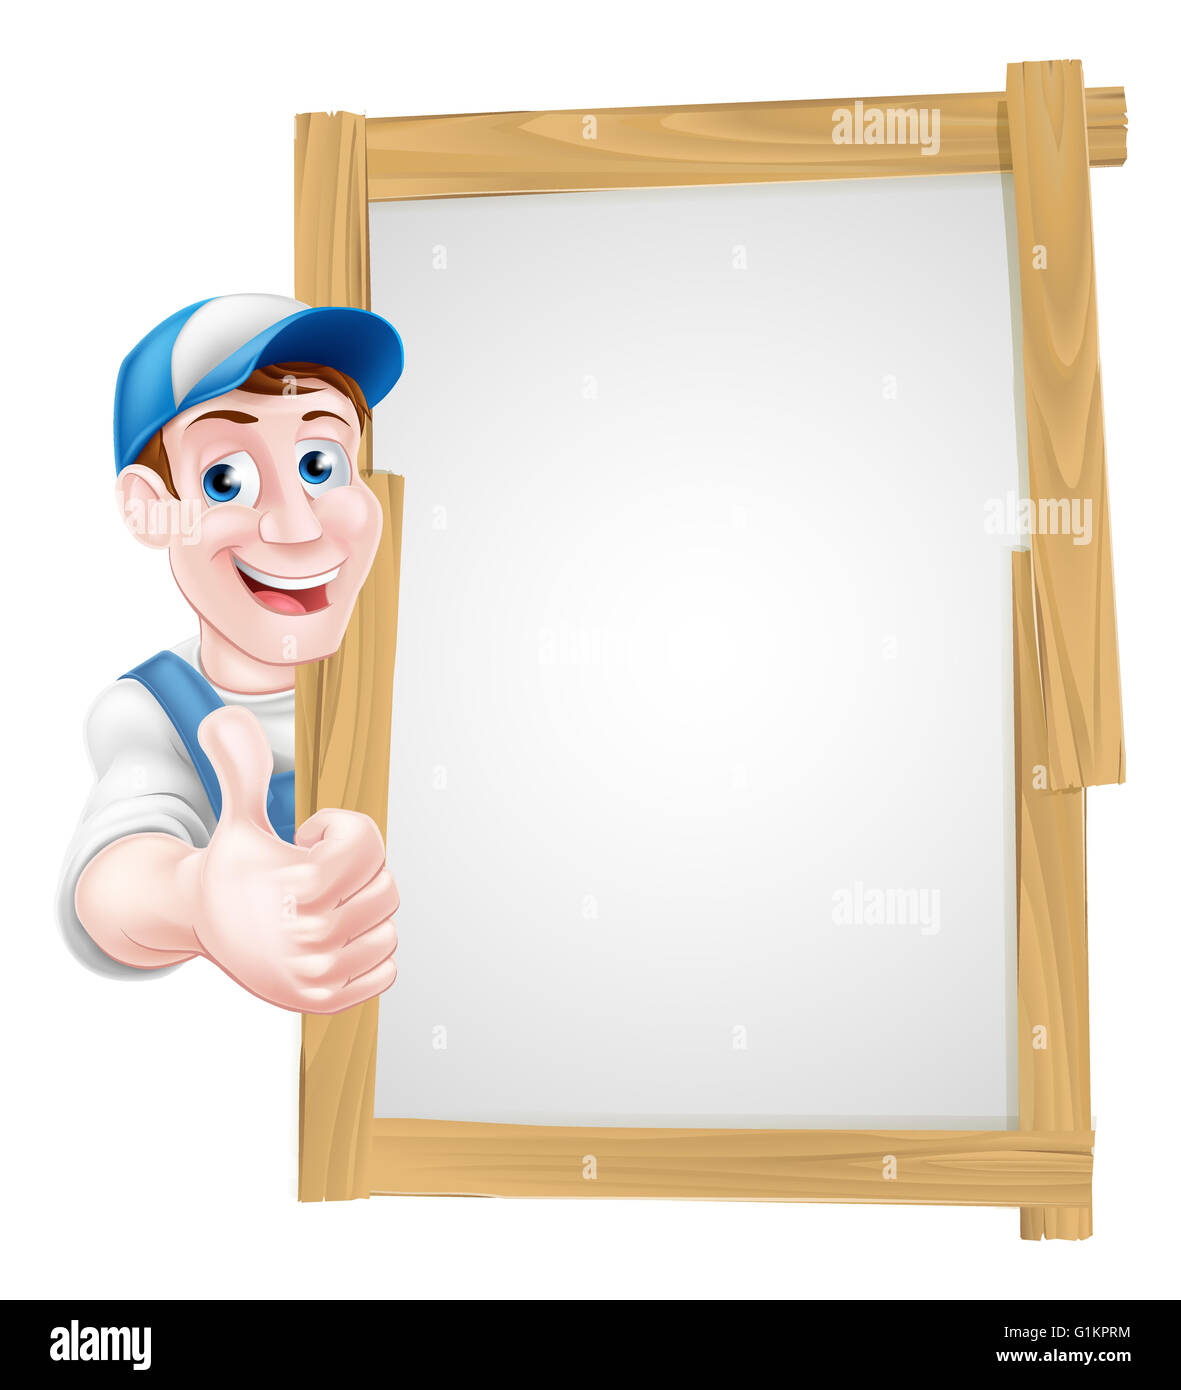 Ein Cartoon-Mechaniker, Klempner, Handwerker, Dekorateur oder Gärtner gelehnt auf einem Schild und geben einen Daumen nach oben Stockfoto